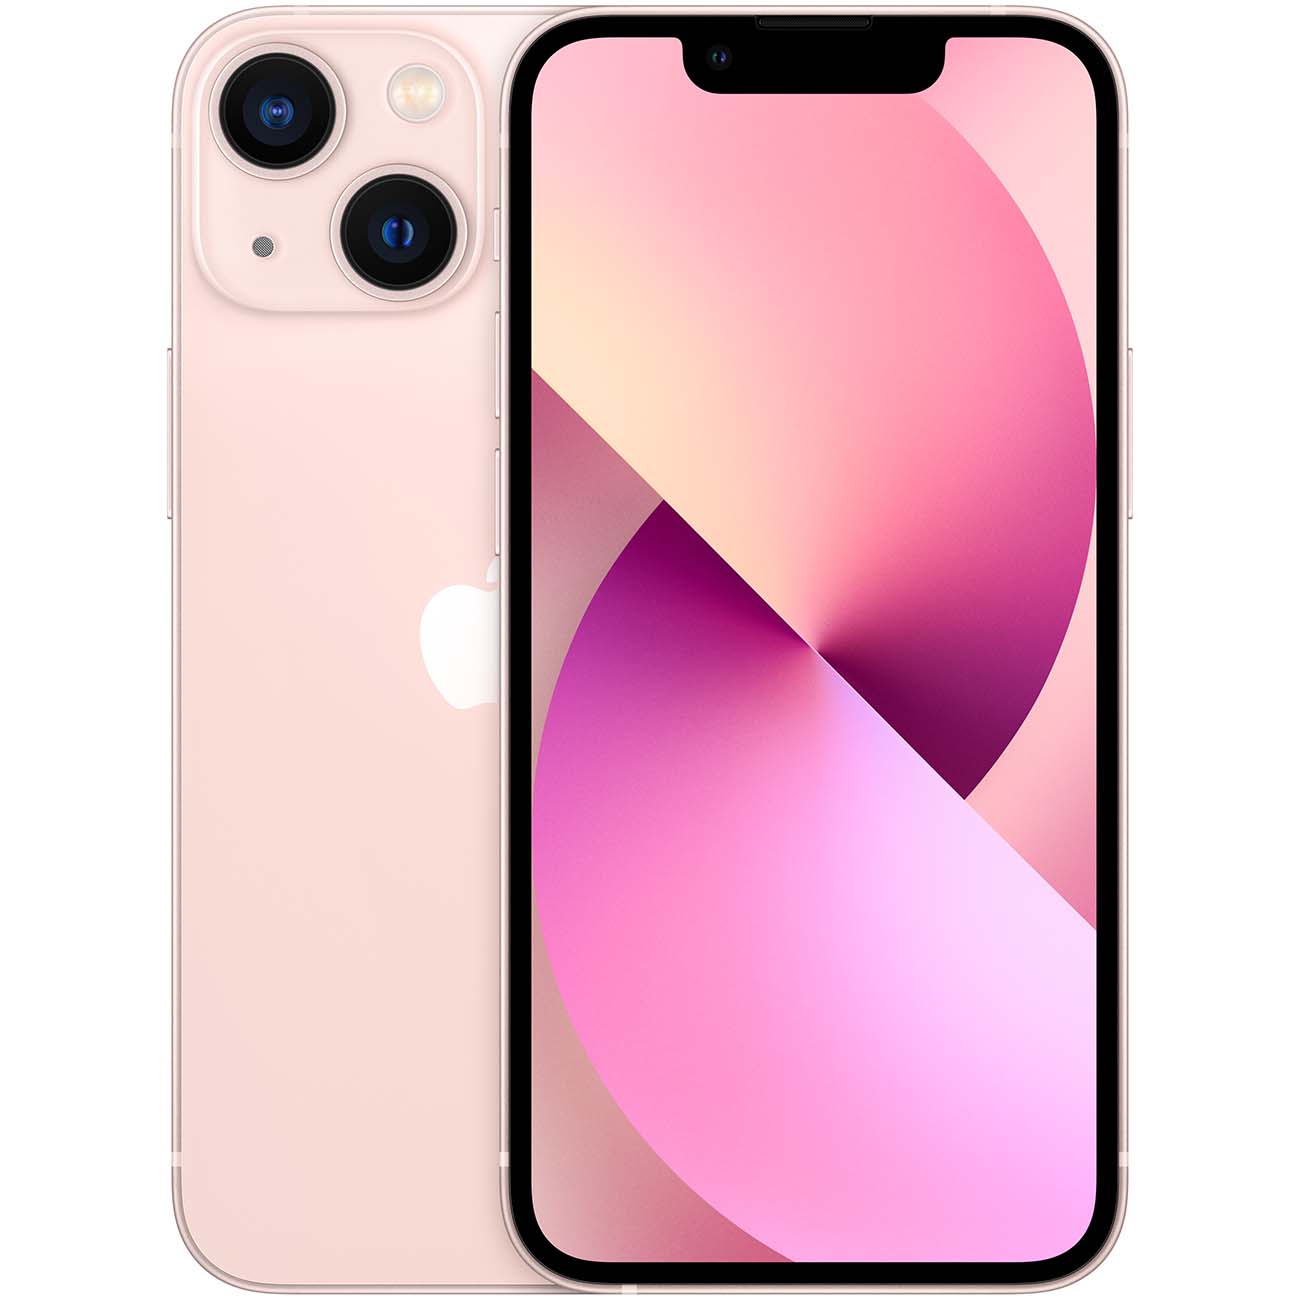 Купить смартфон apple iphone 13 256gb pink Apple iPhone 13 в официальном магазине Apple, Samsung, Xiaomi. iPixel.ru Купить, заказ, кредит, рассрочка, отзывы,  характеристики, цена,  фотографии, в подарок.